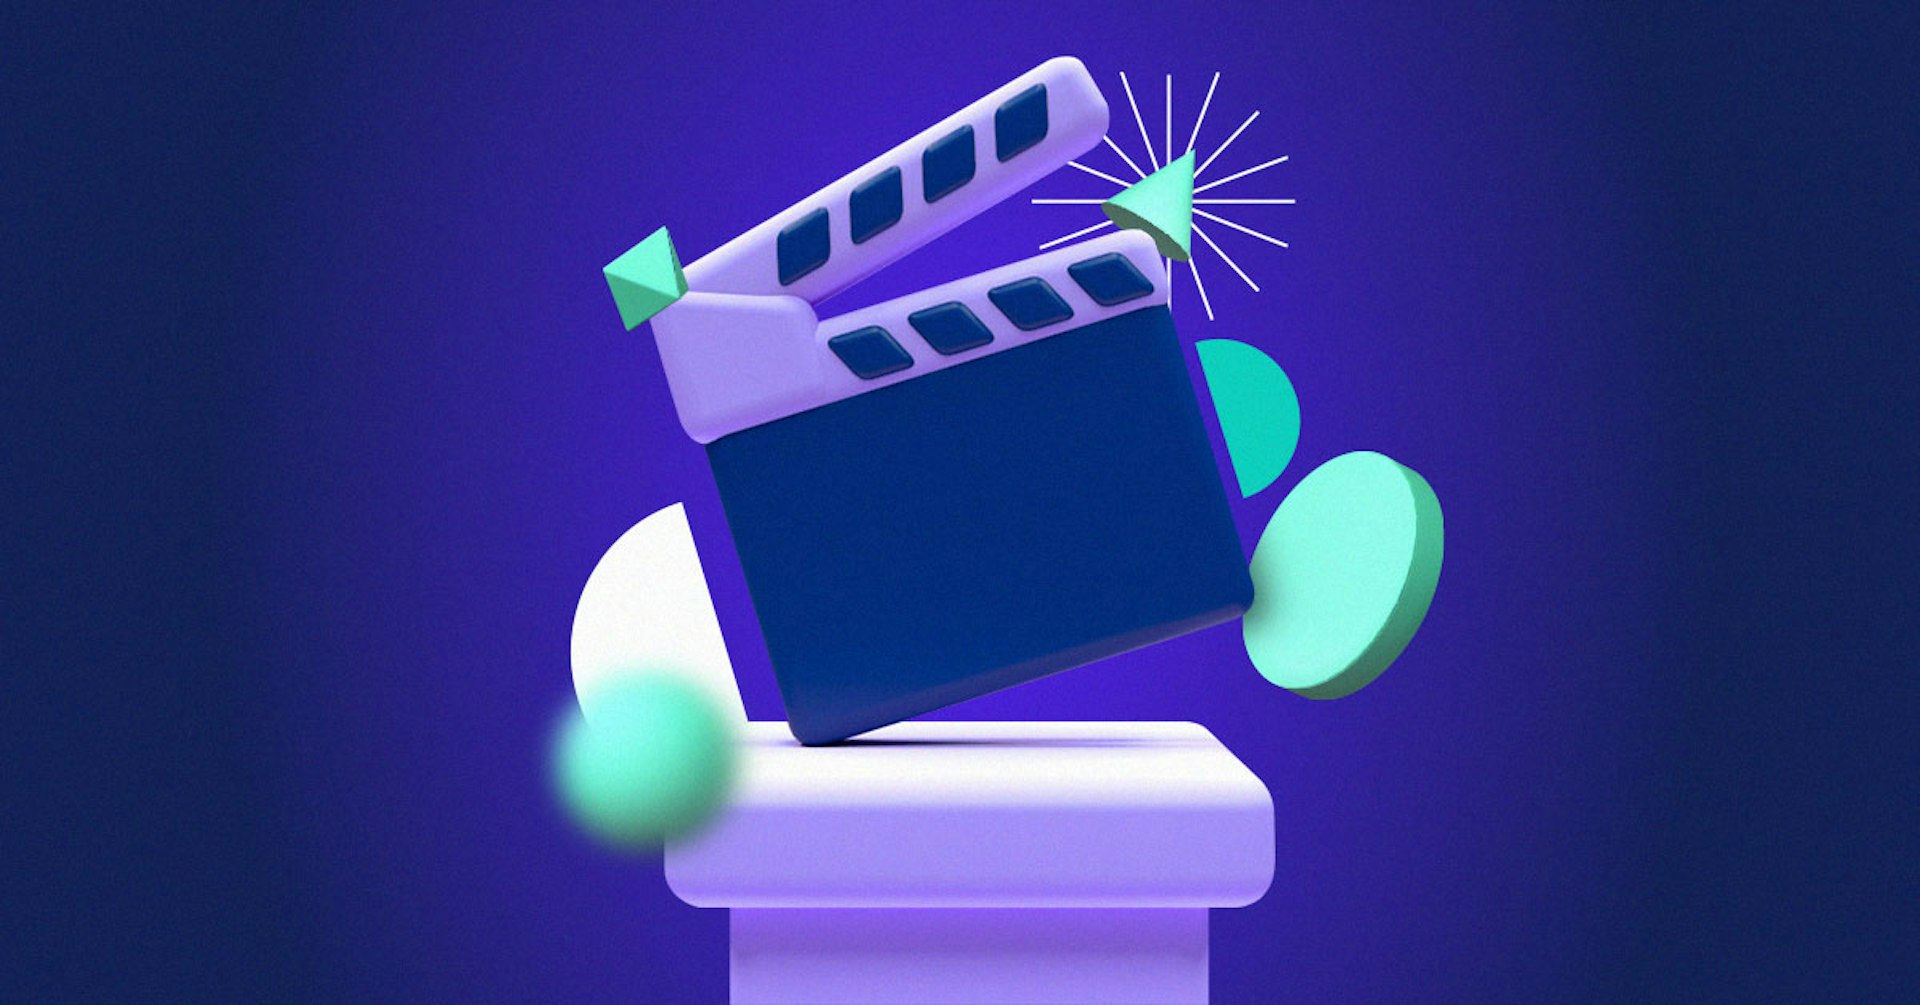 Descubre las etapas de la producción audiovisual y aprende a organizar tu proyecto cinematográfico